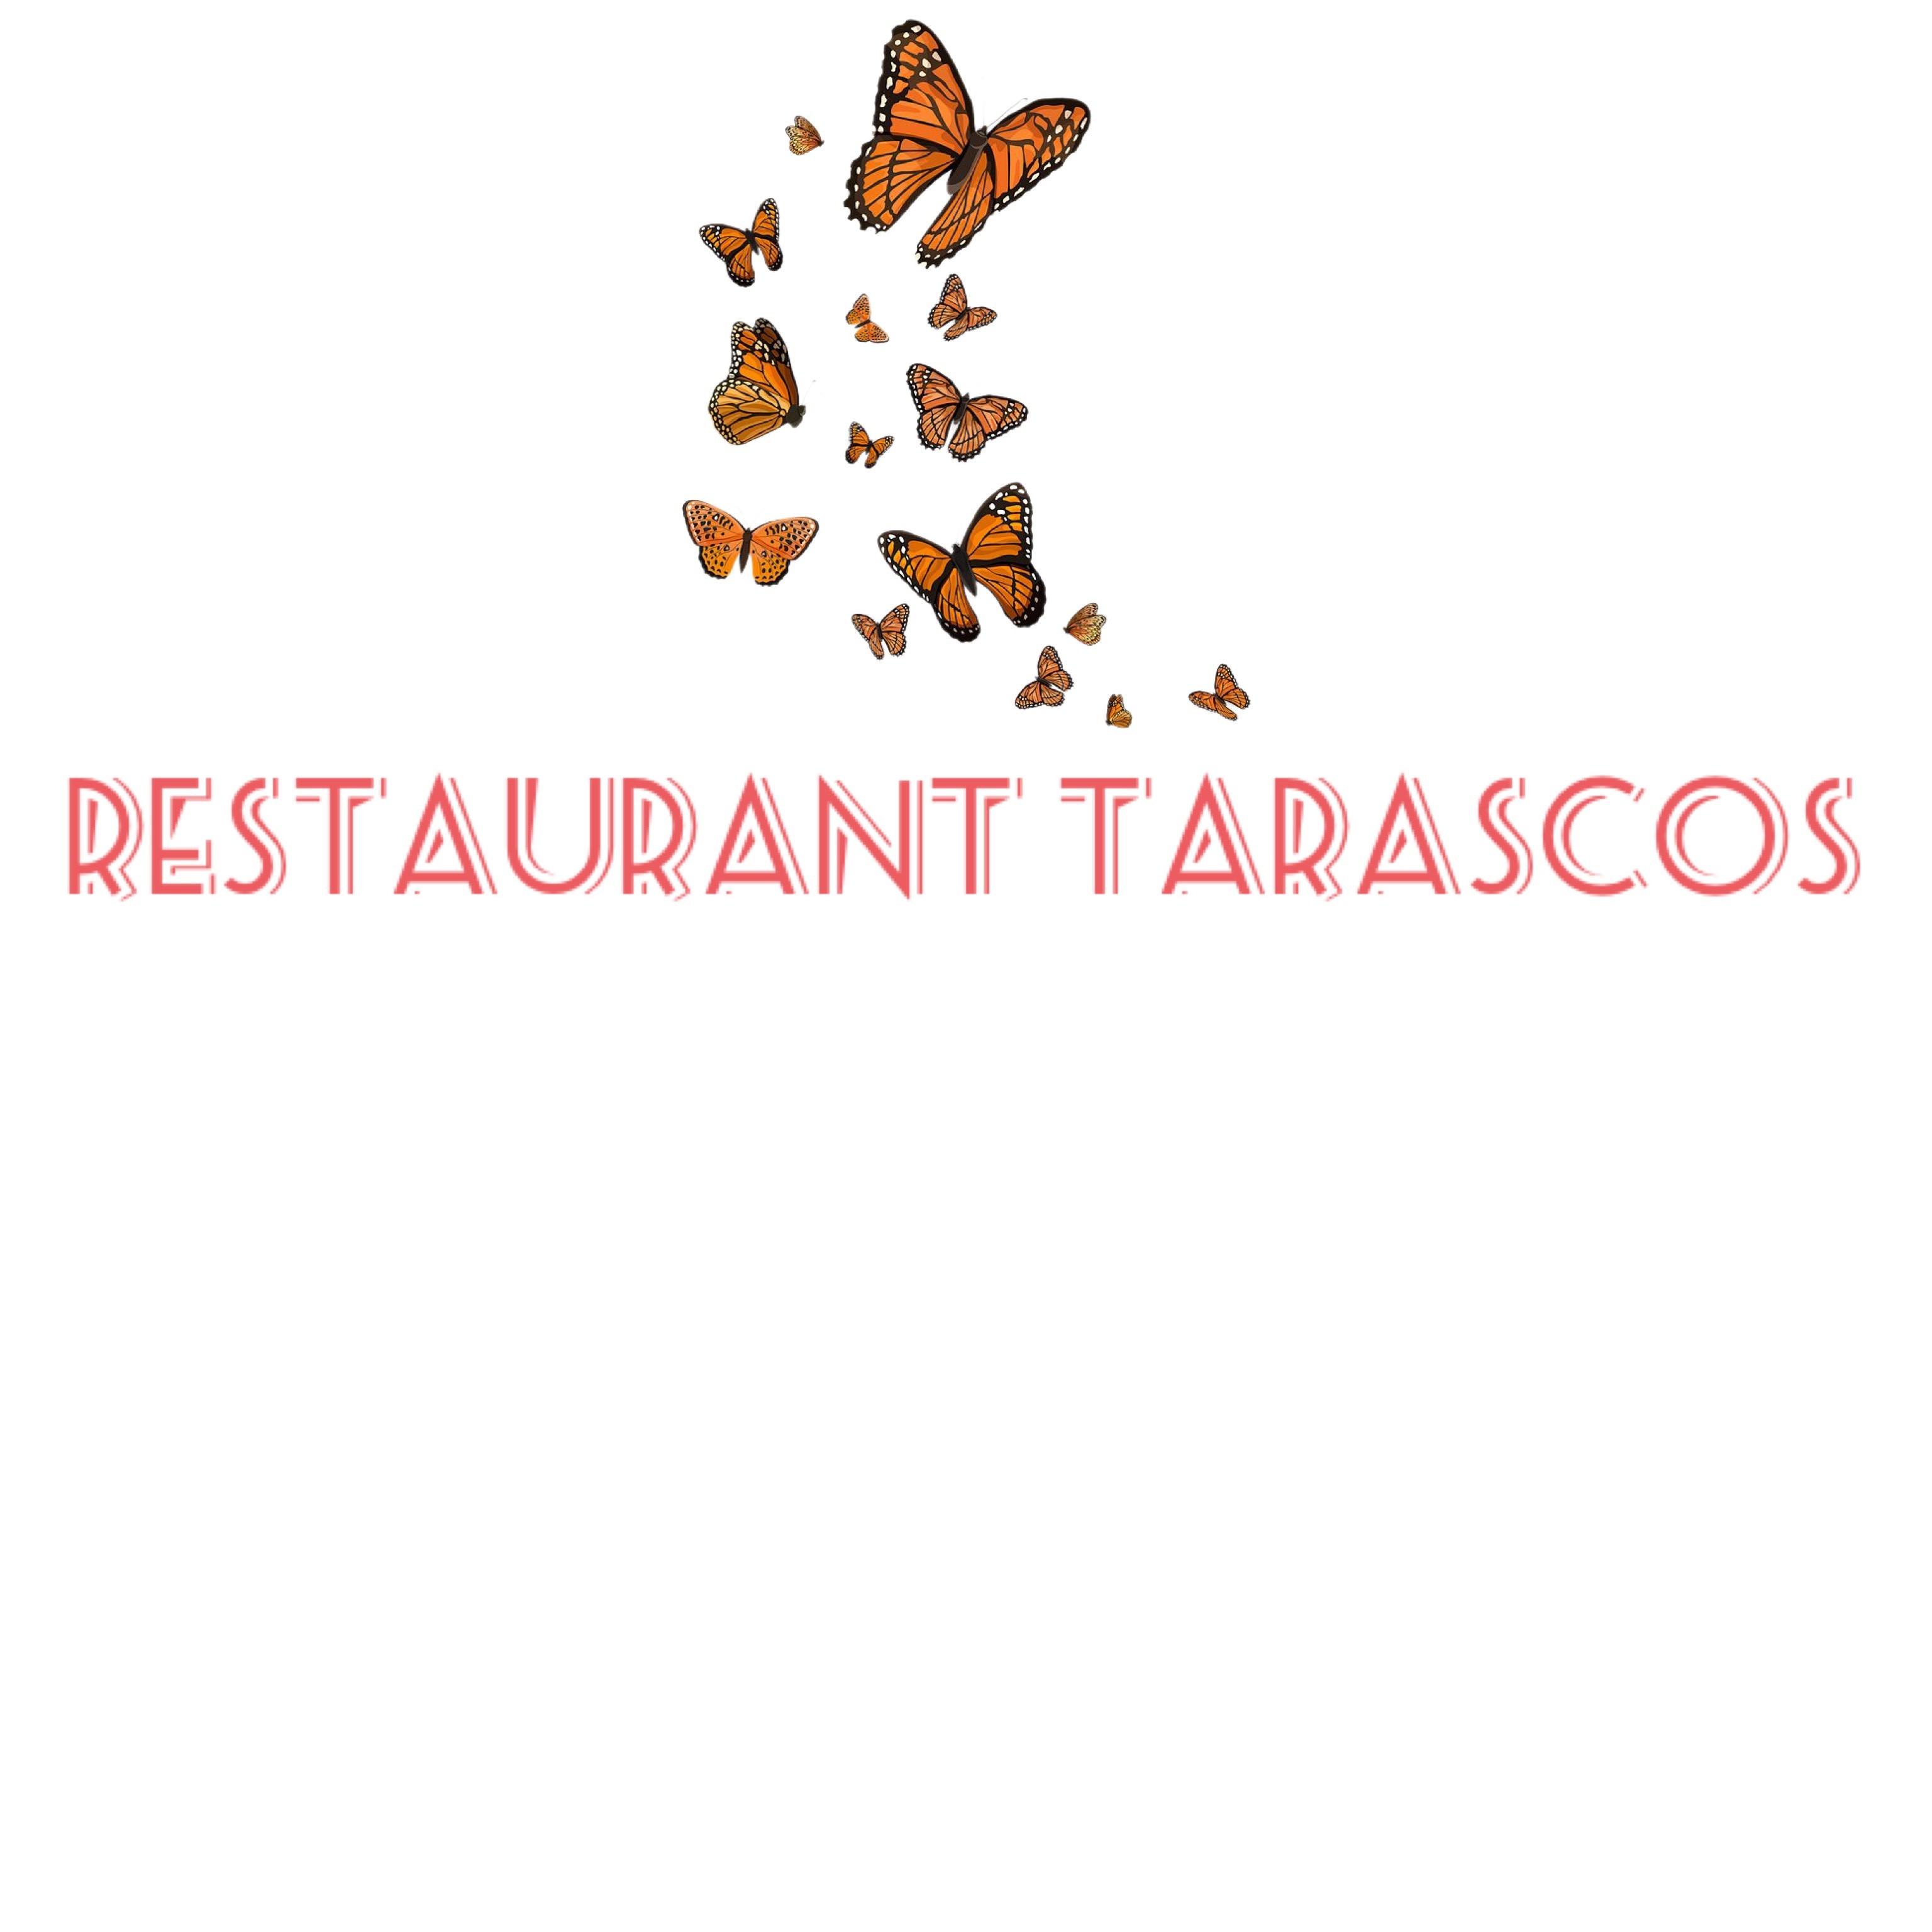 Restaurant Tarascos